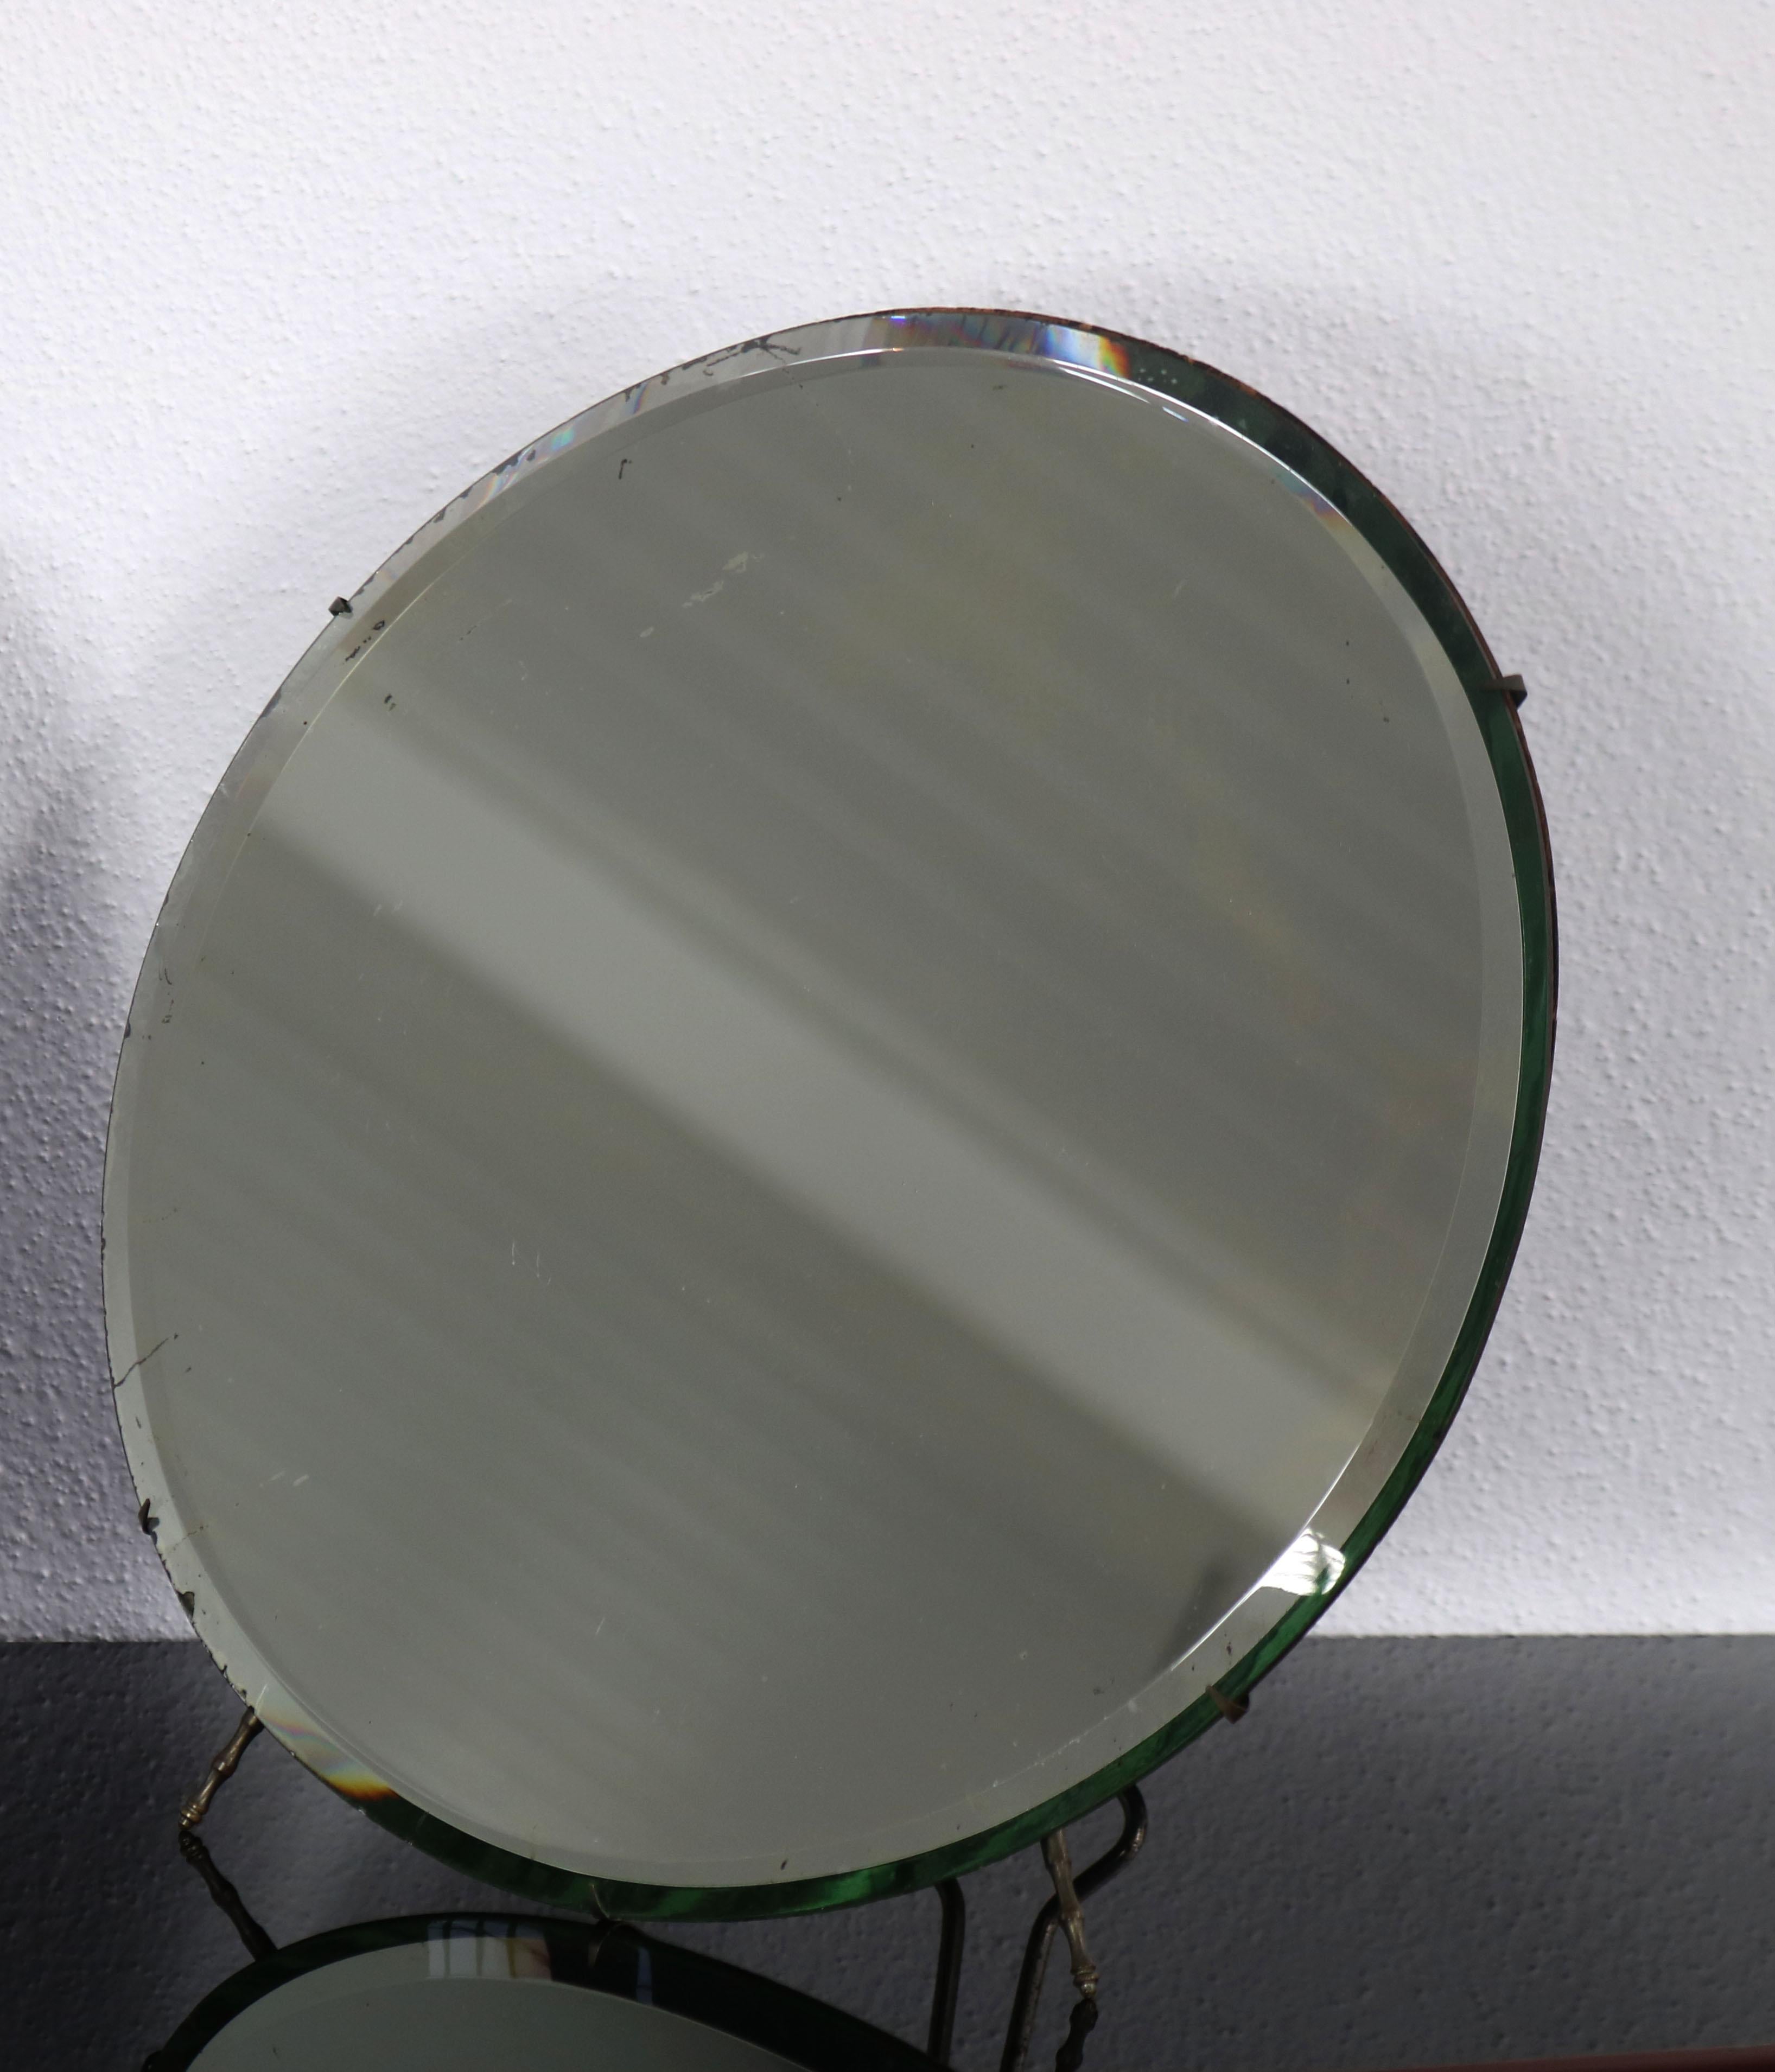 Miroir de table rond et simple de Luigi Fontana & C, Italie, années 1950. Le miroir de table possède quelques traces de temps et d'usage, qui ne nuisent pas au charme du miroir. 

